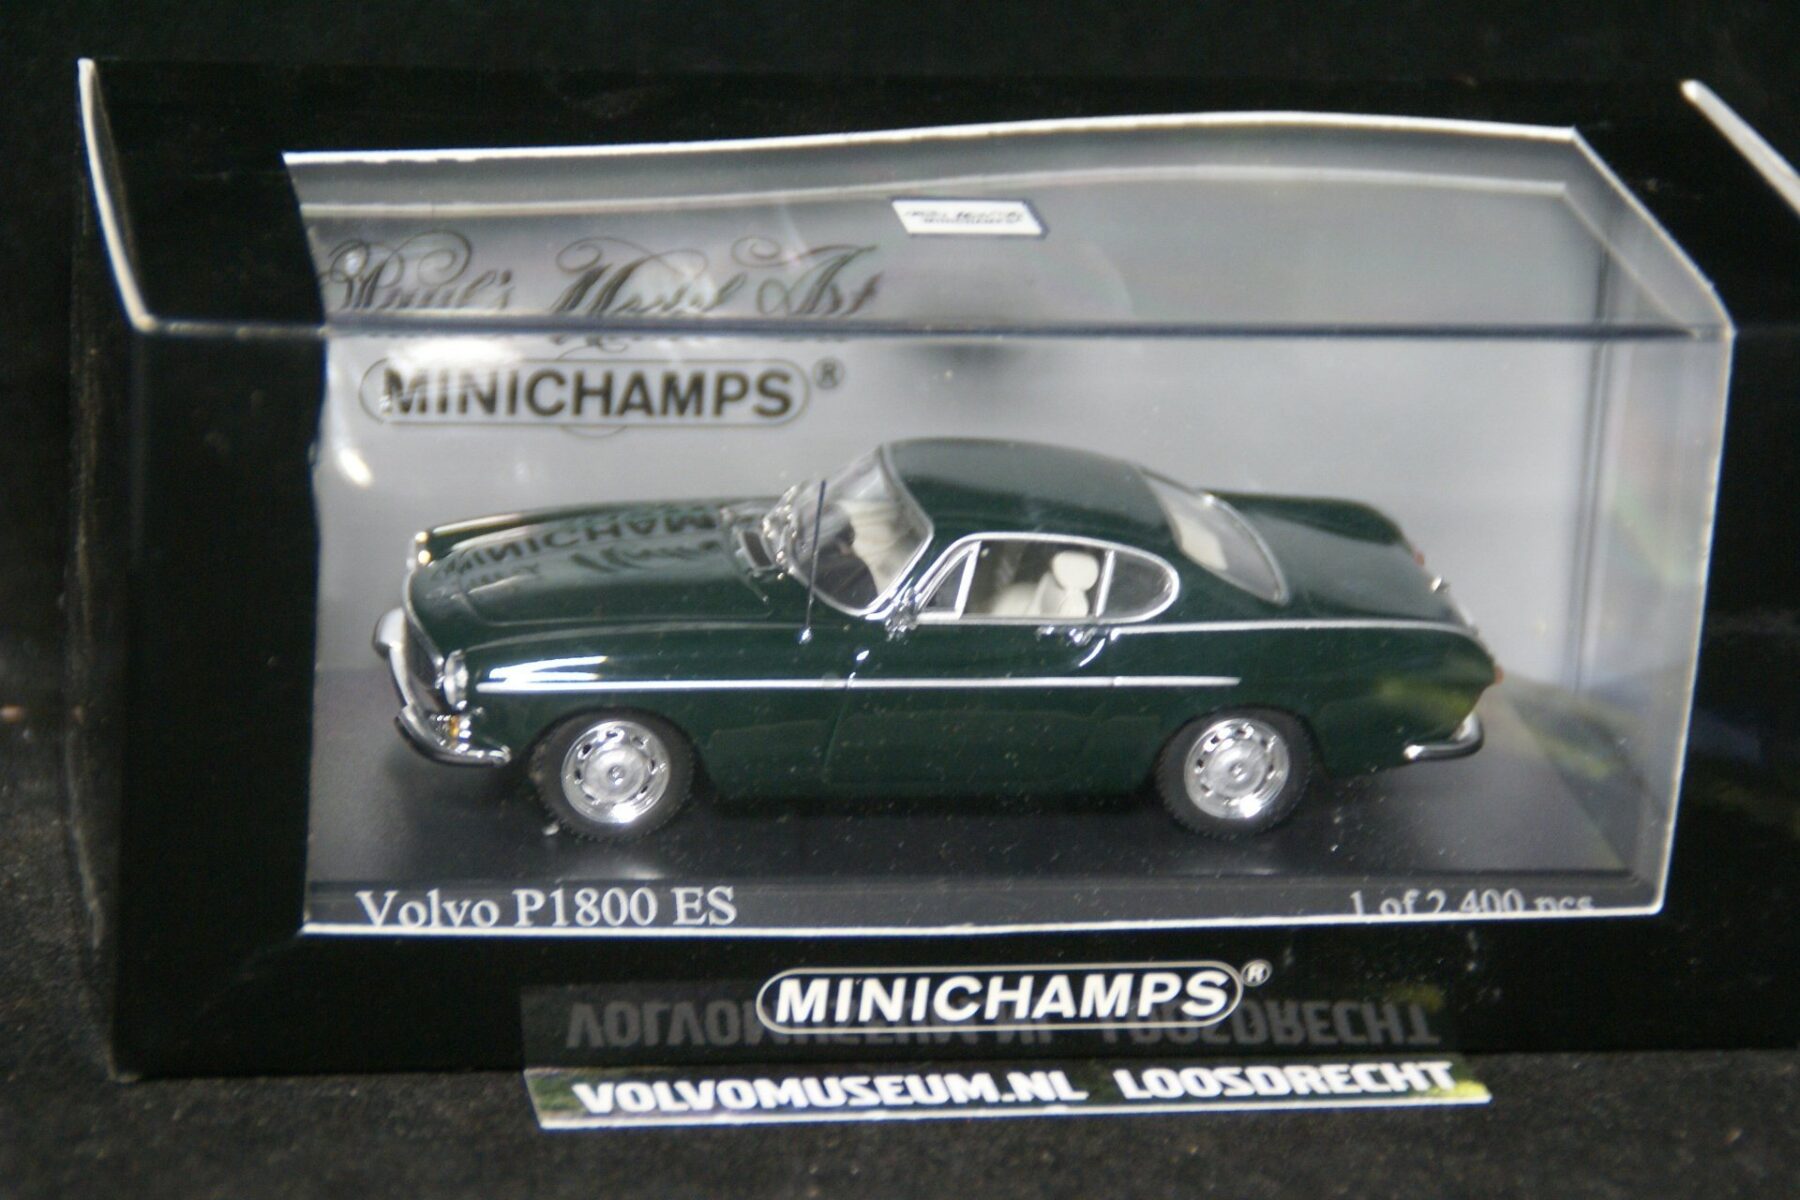 DSC03210 miniatuur 1969 Volvo P1800 groen 1op43 Minichamps 171625 1 van 2400 MB